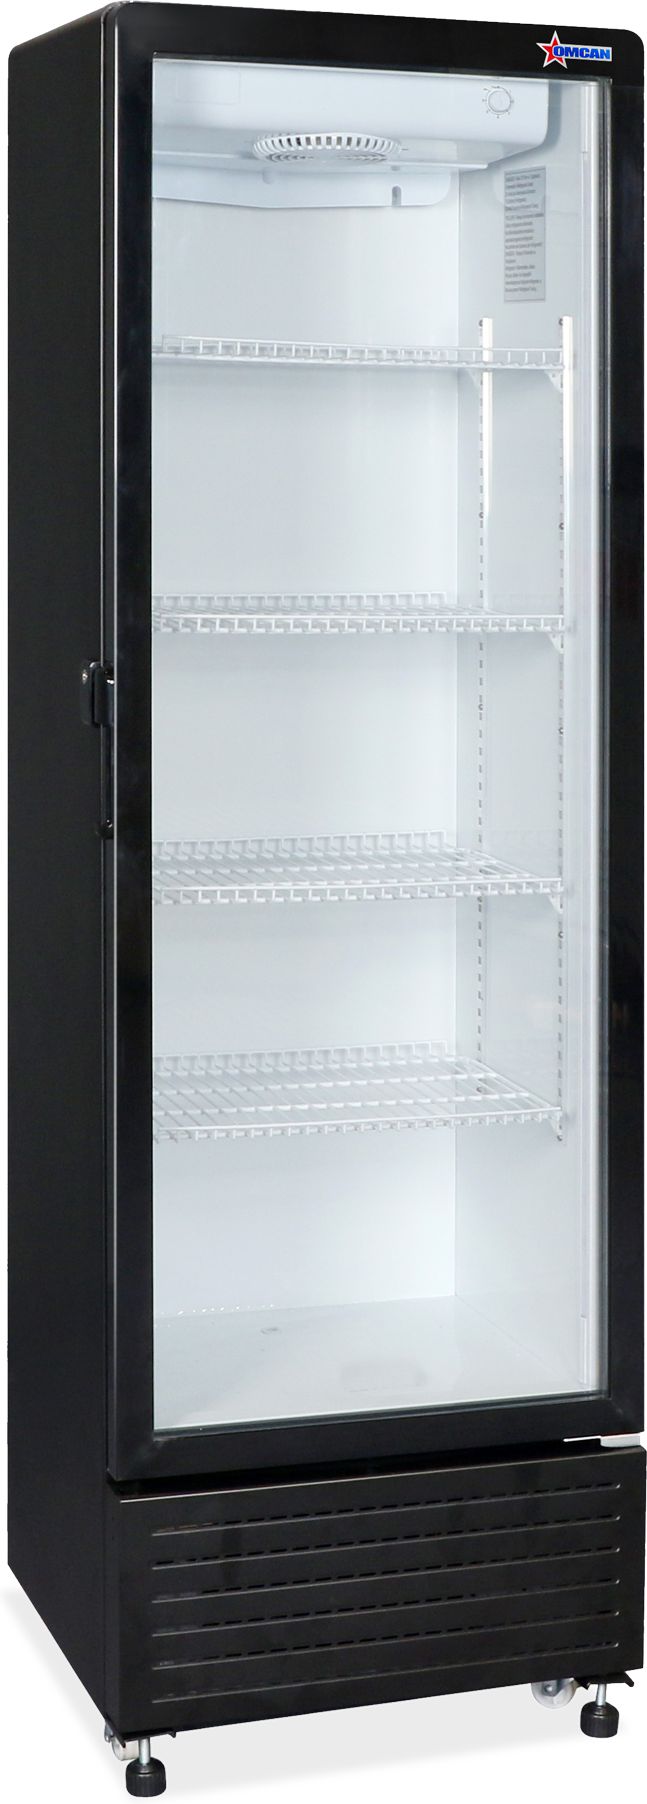 Omcan - 23" Black Single Glass Door Refrigerator - RE-CN-305